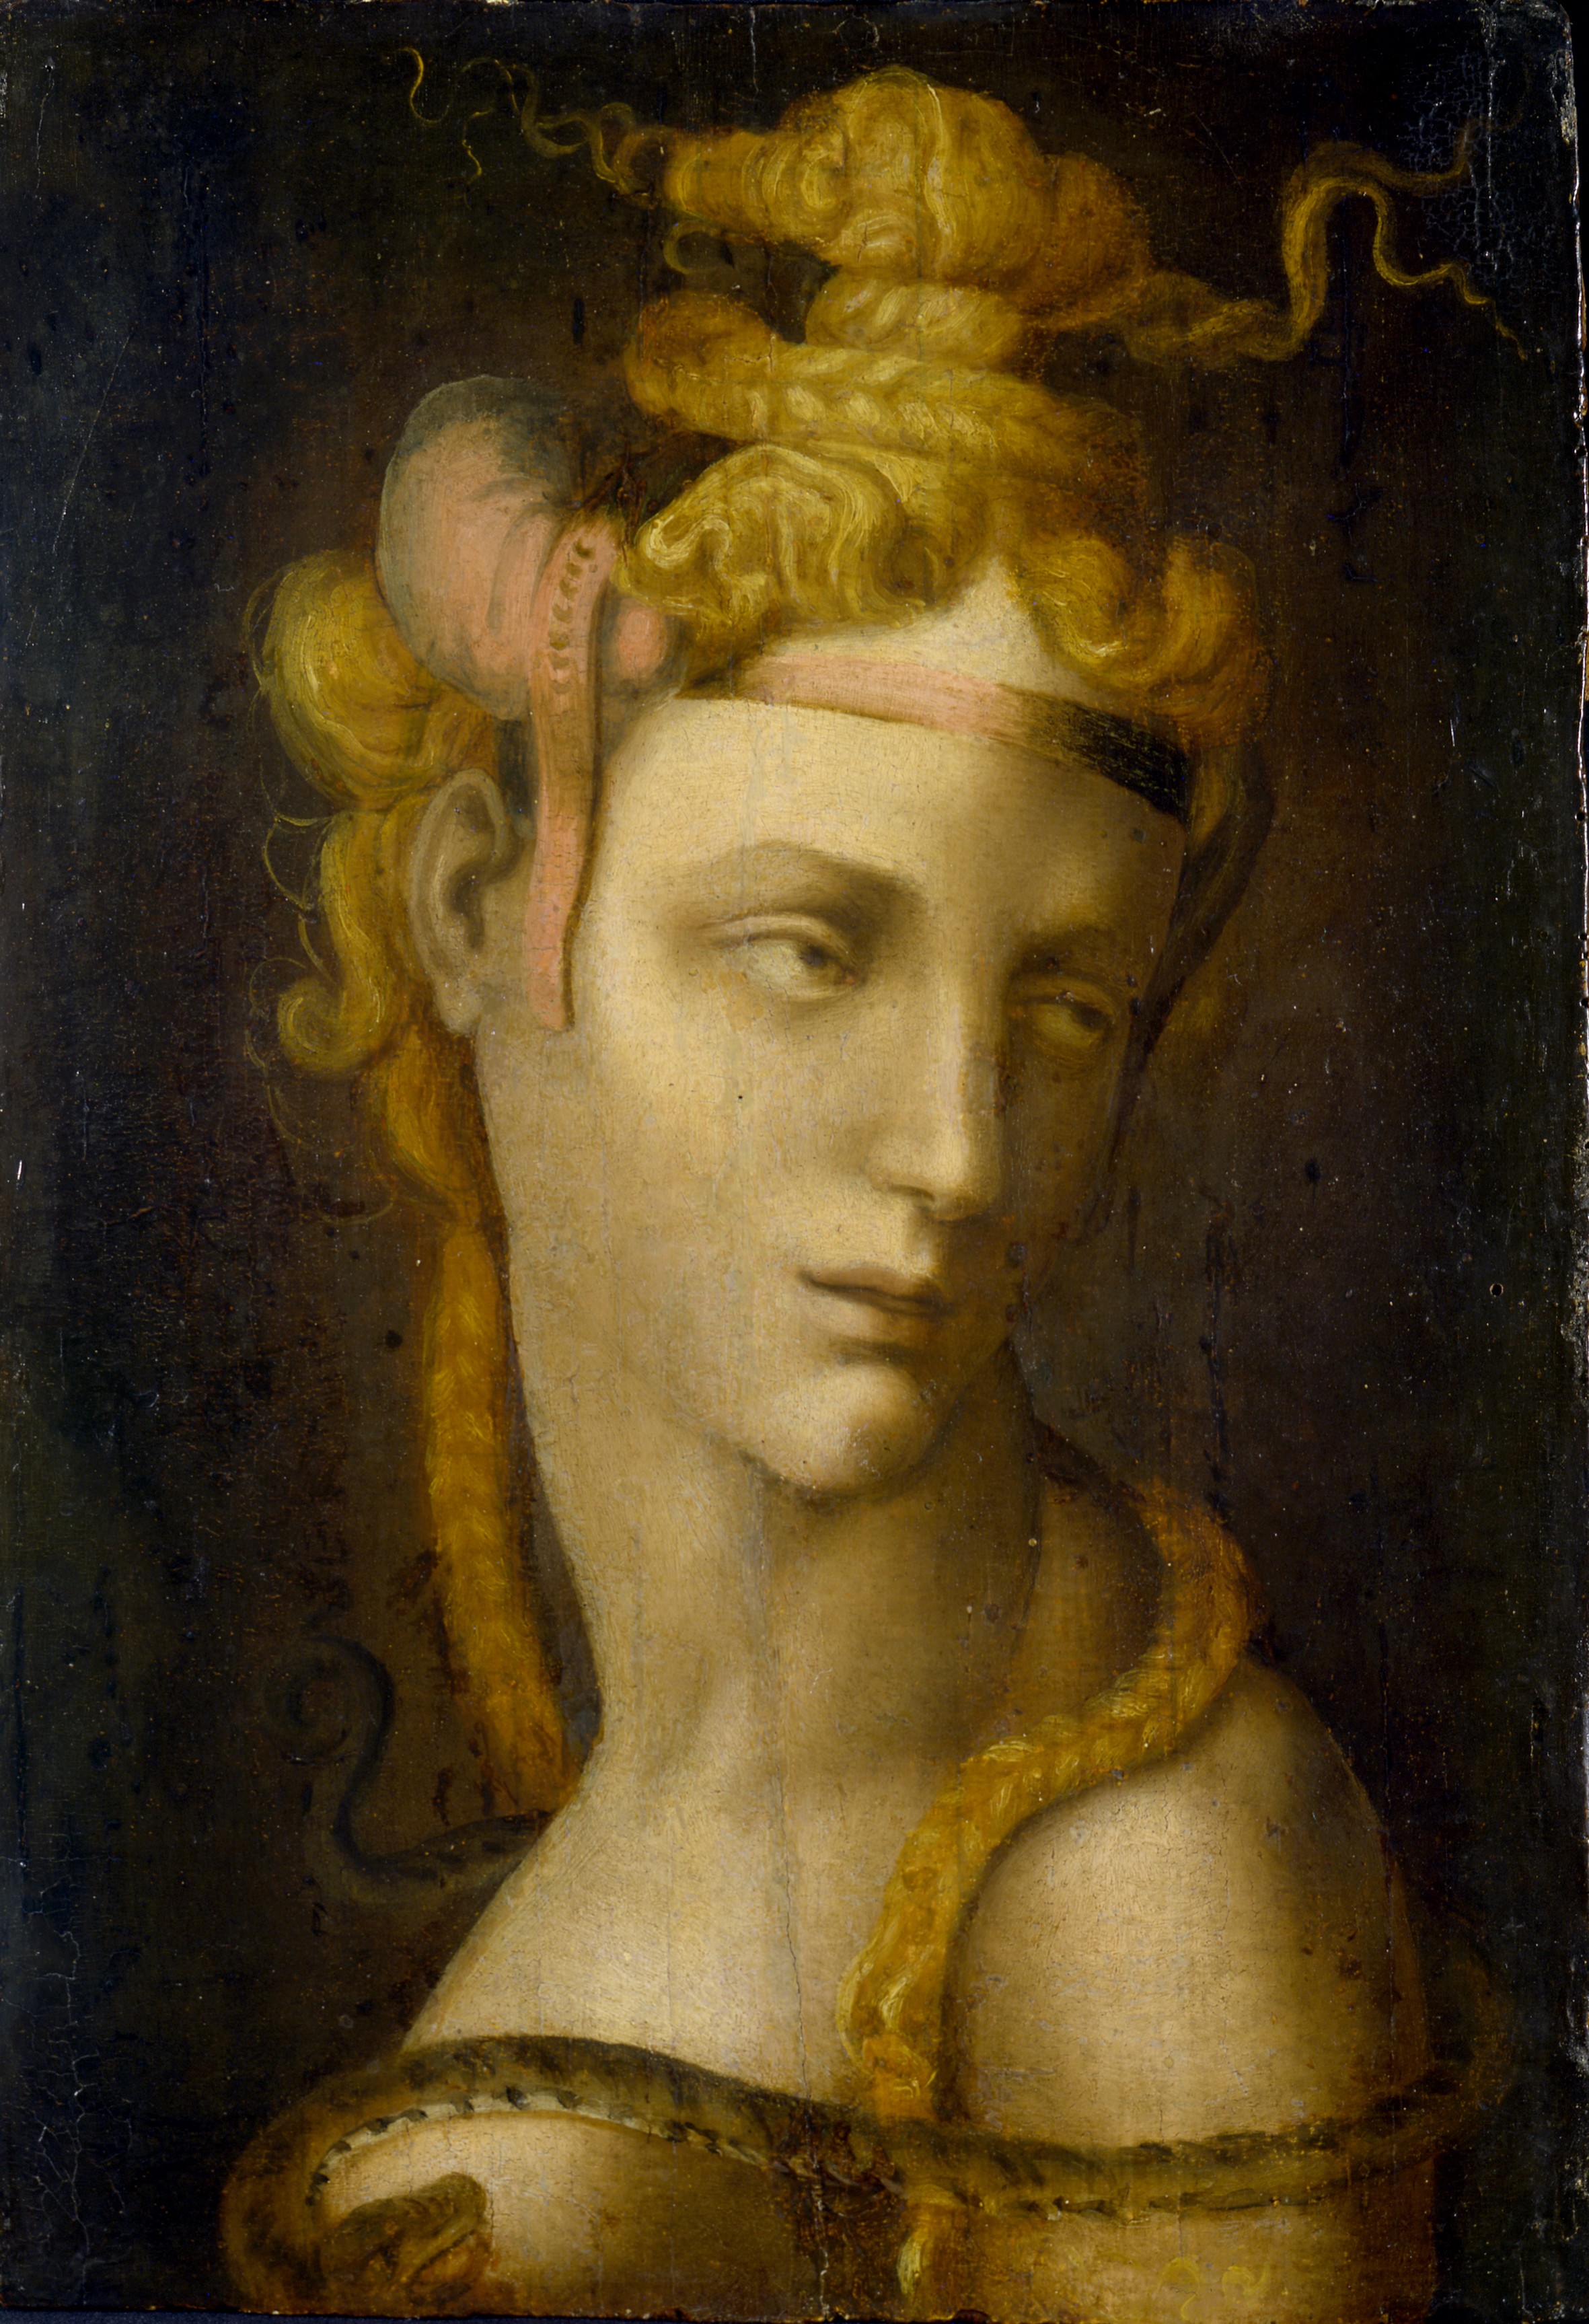 Ambito di <b>Michele Tosini</b>, Cleopatra, olio su tavola 37x25,7 cm. Museo - 2.-Ambito-di-Michele-Tosini_Cleopatra_Museo-Poldi-Pezzoli